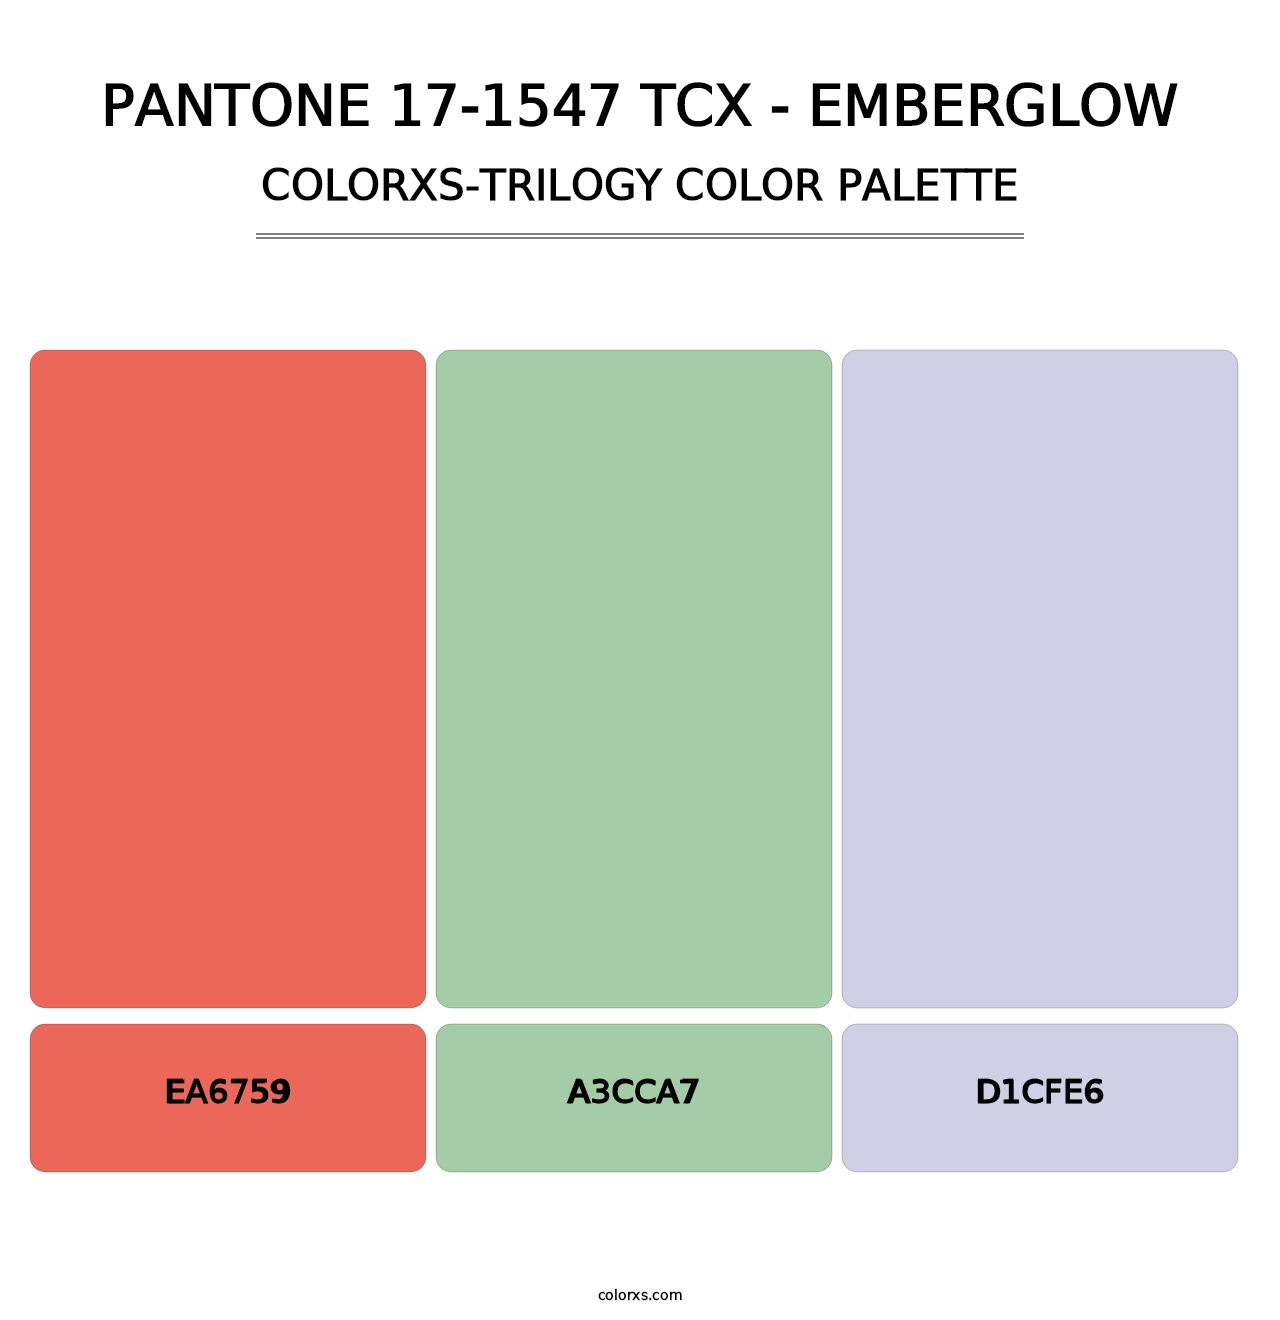 PANTONE 17-1547 TCX - Emberglow - Colorxs Trilogy Palette